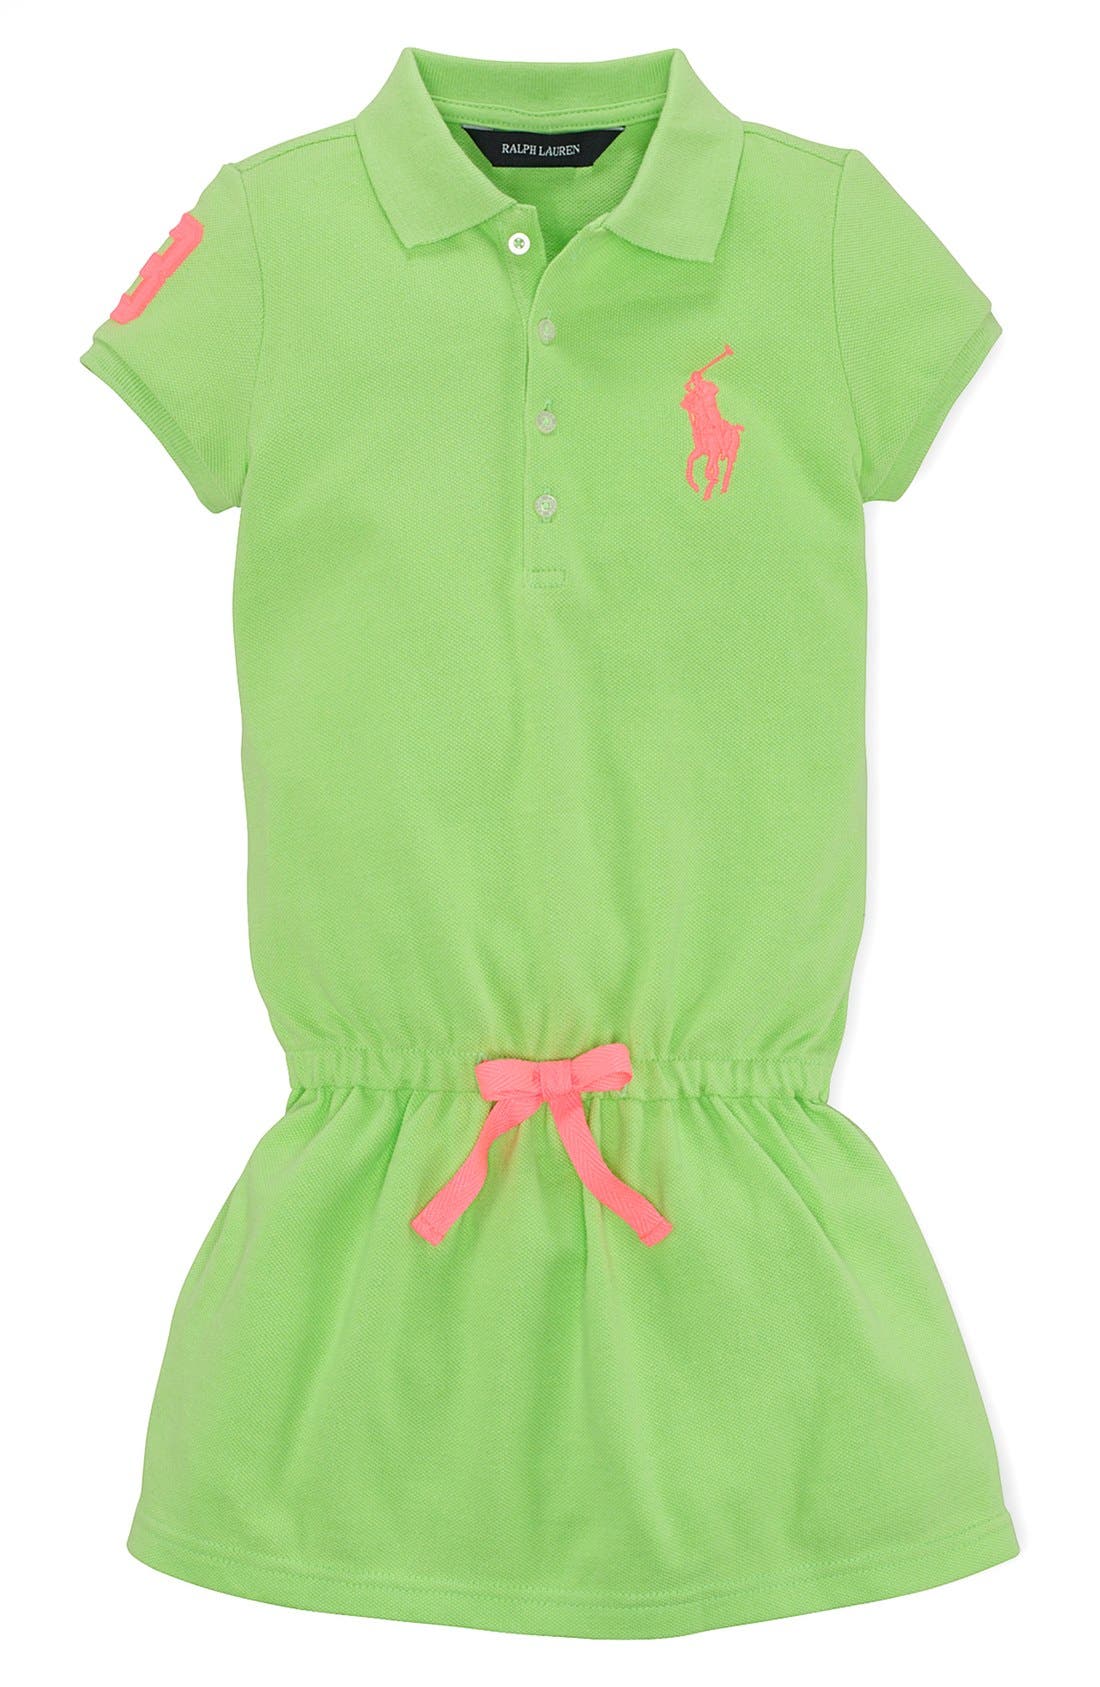 polo dresses for little girls